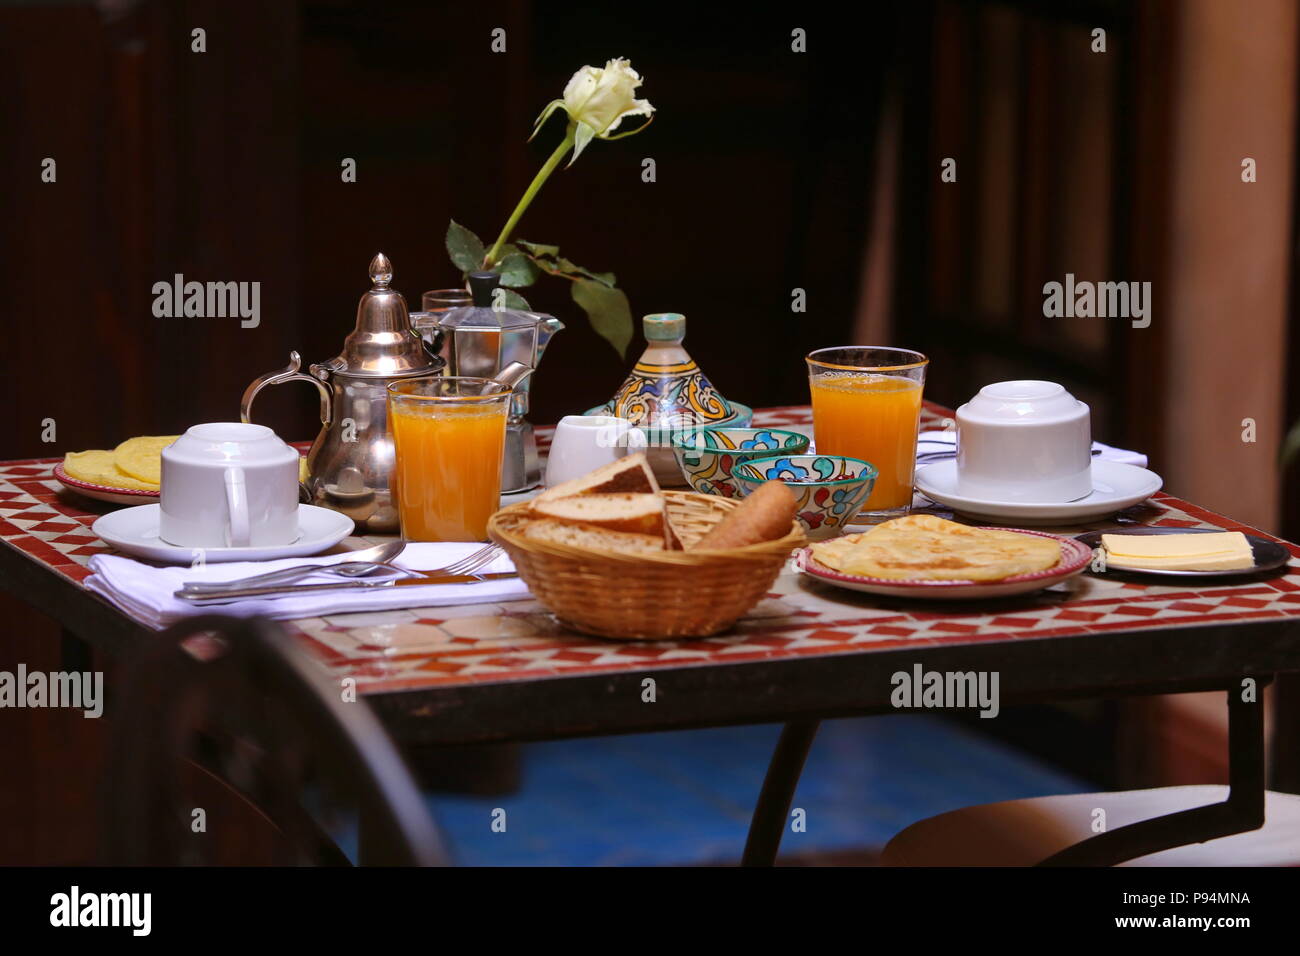 Délicieux petit-déjeuner de style marocain servi dans riad traditionnel marocain (hôtel) Banque D'Images